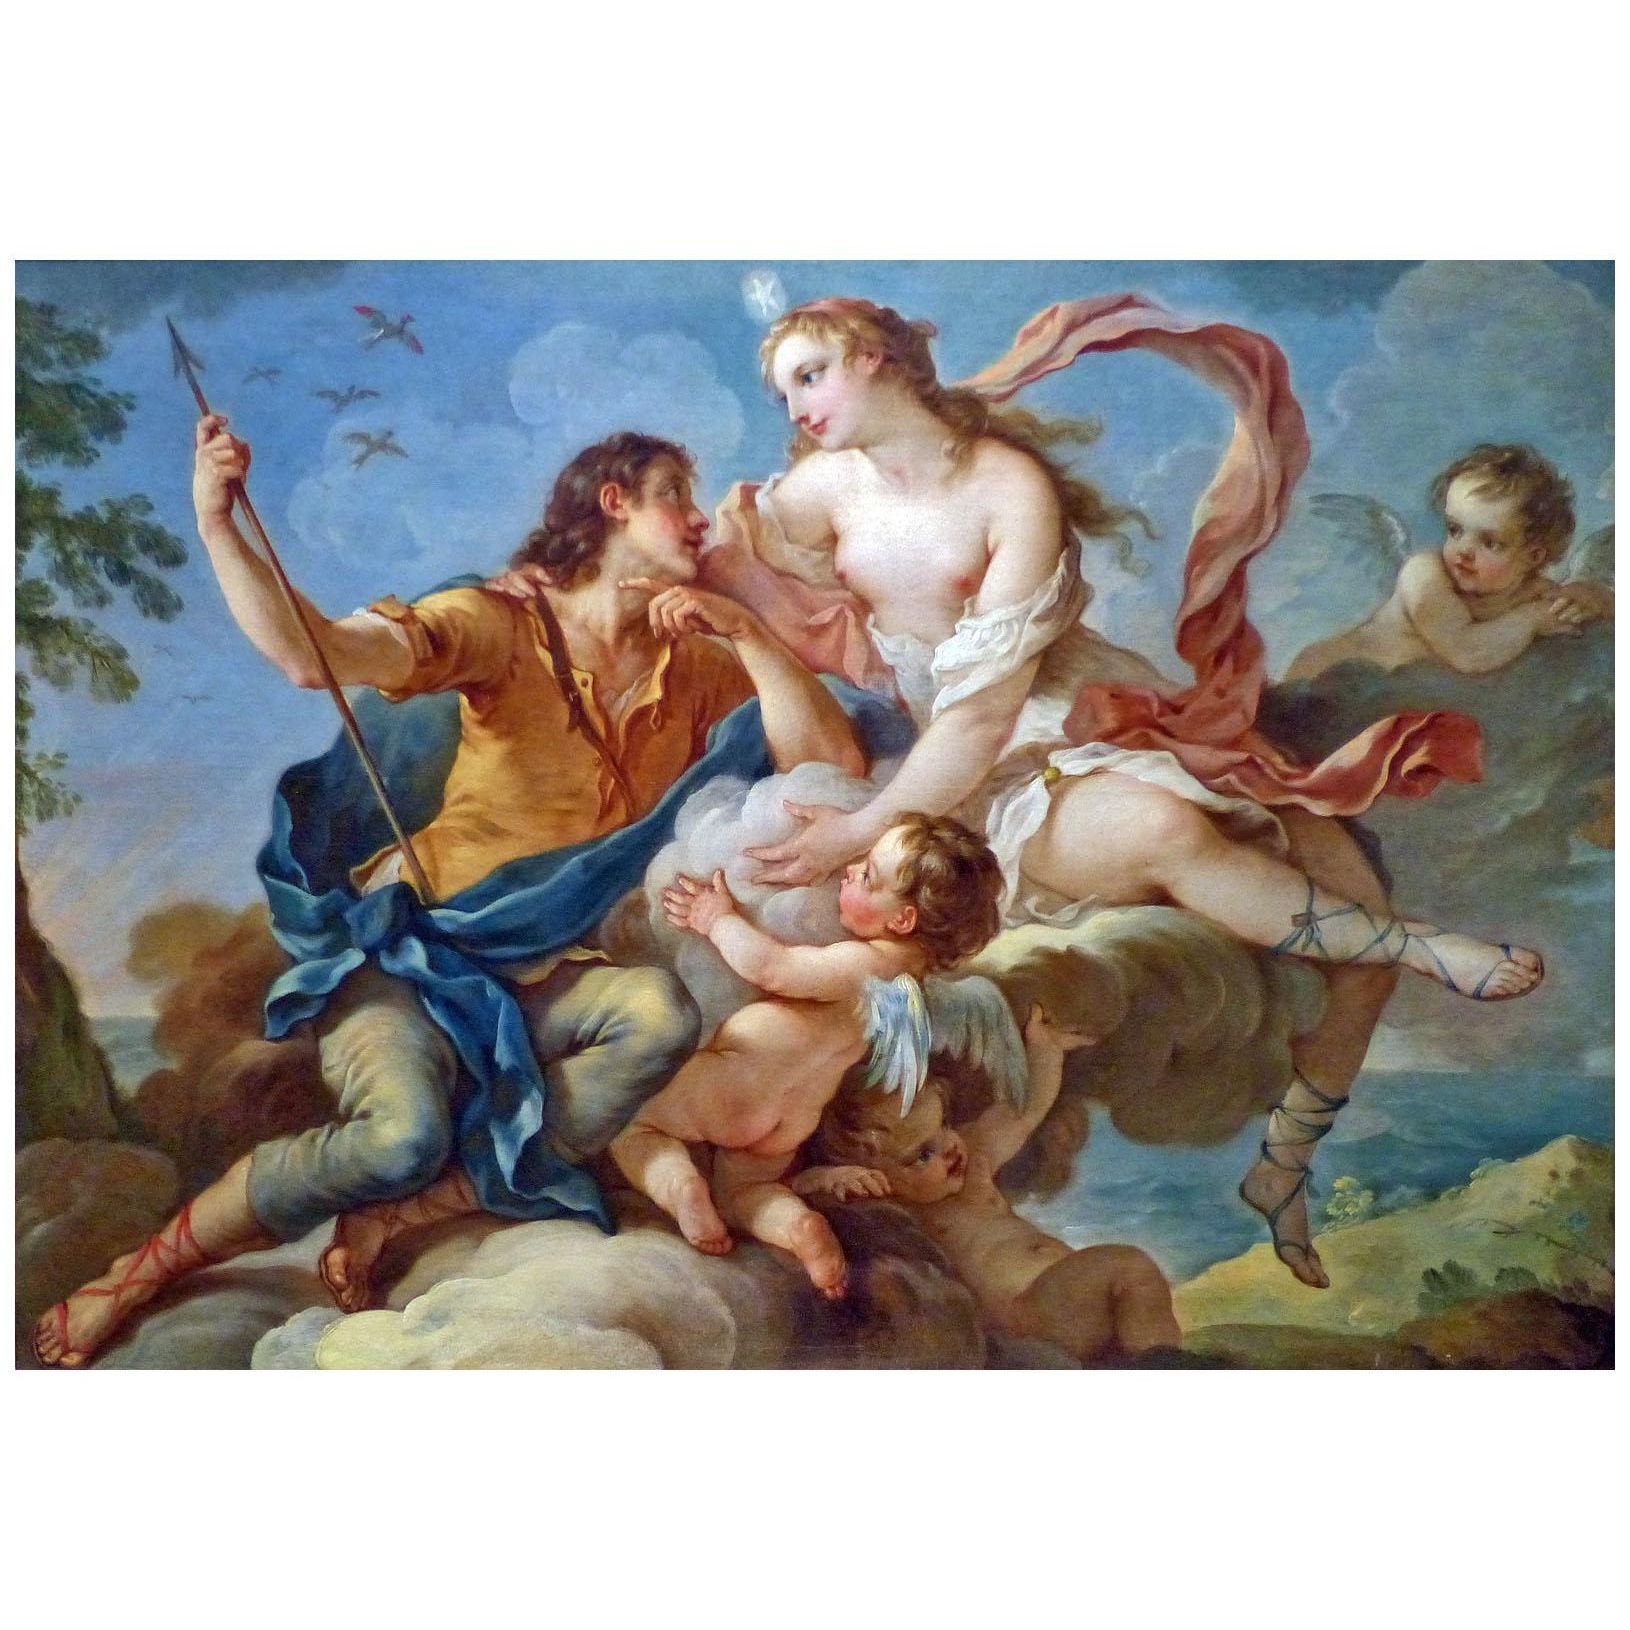 Charles-Joseph Natoire. Aurore et Céphale. 1733. Musée des Beaux-Arts de Nîmes